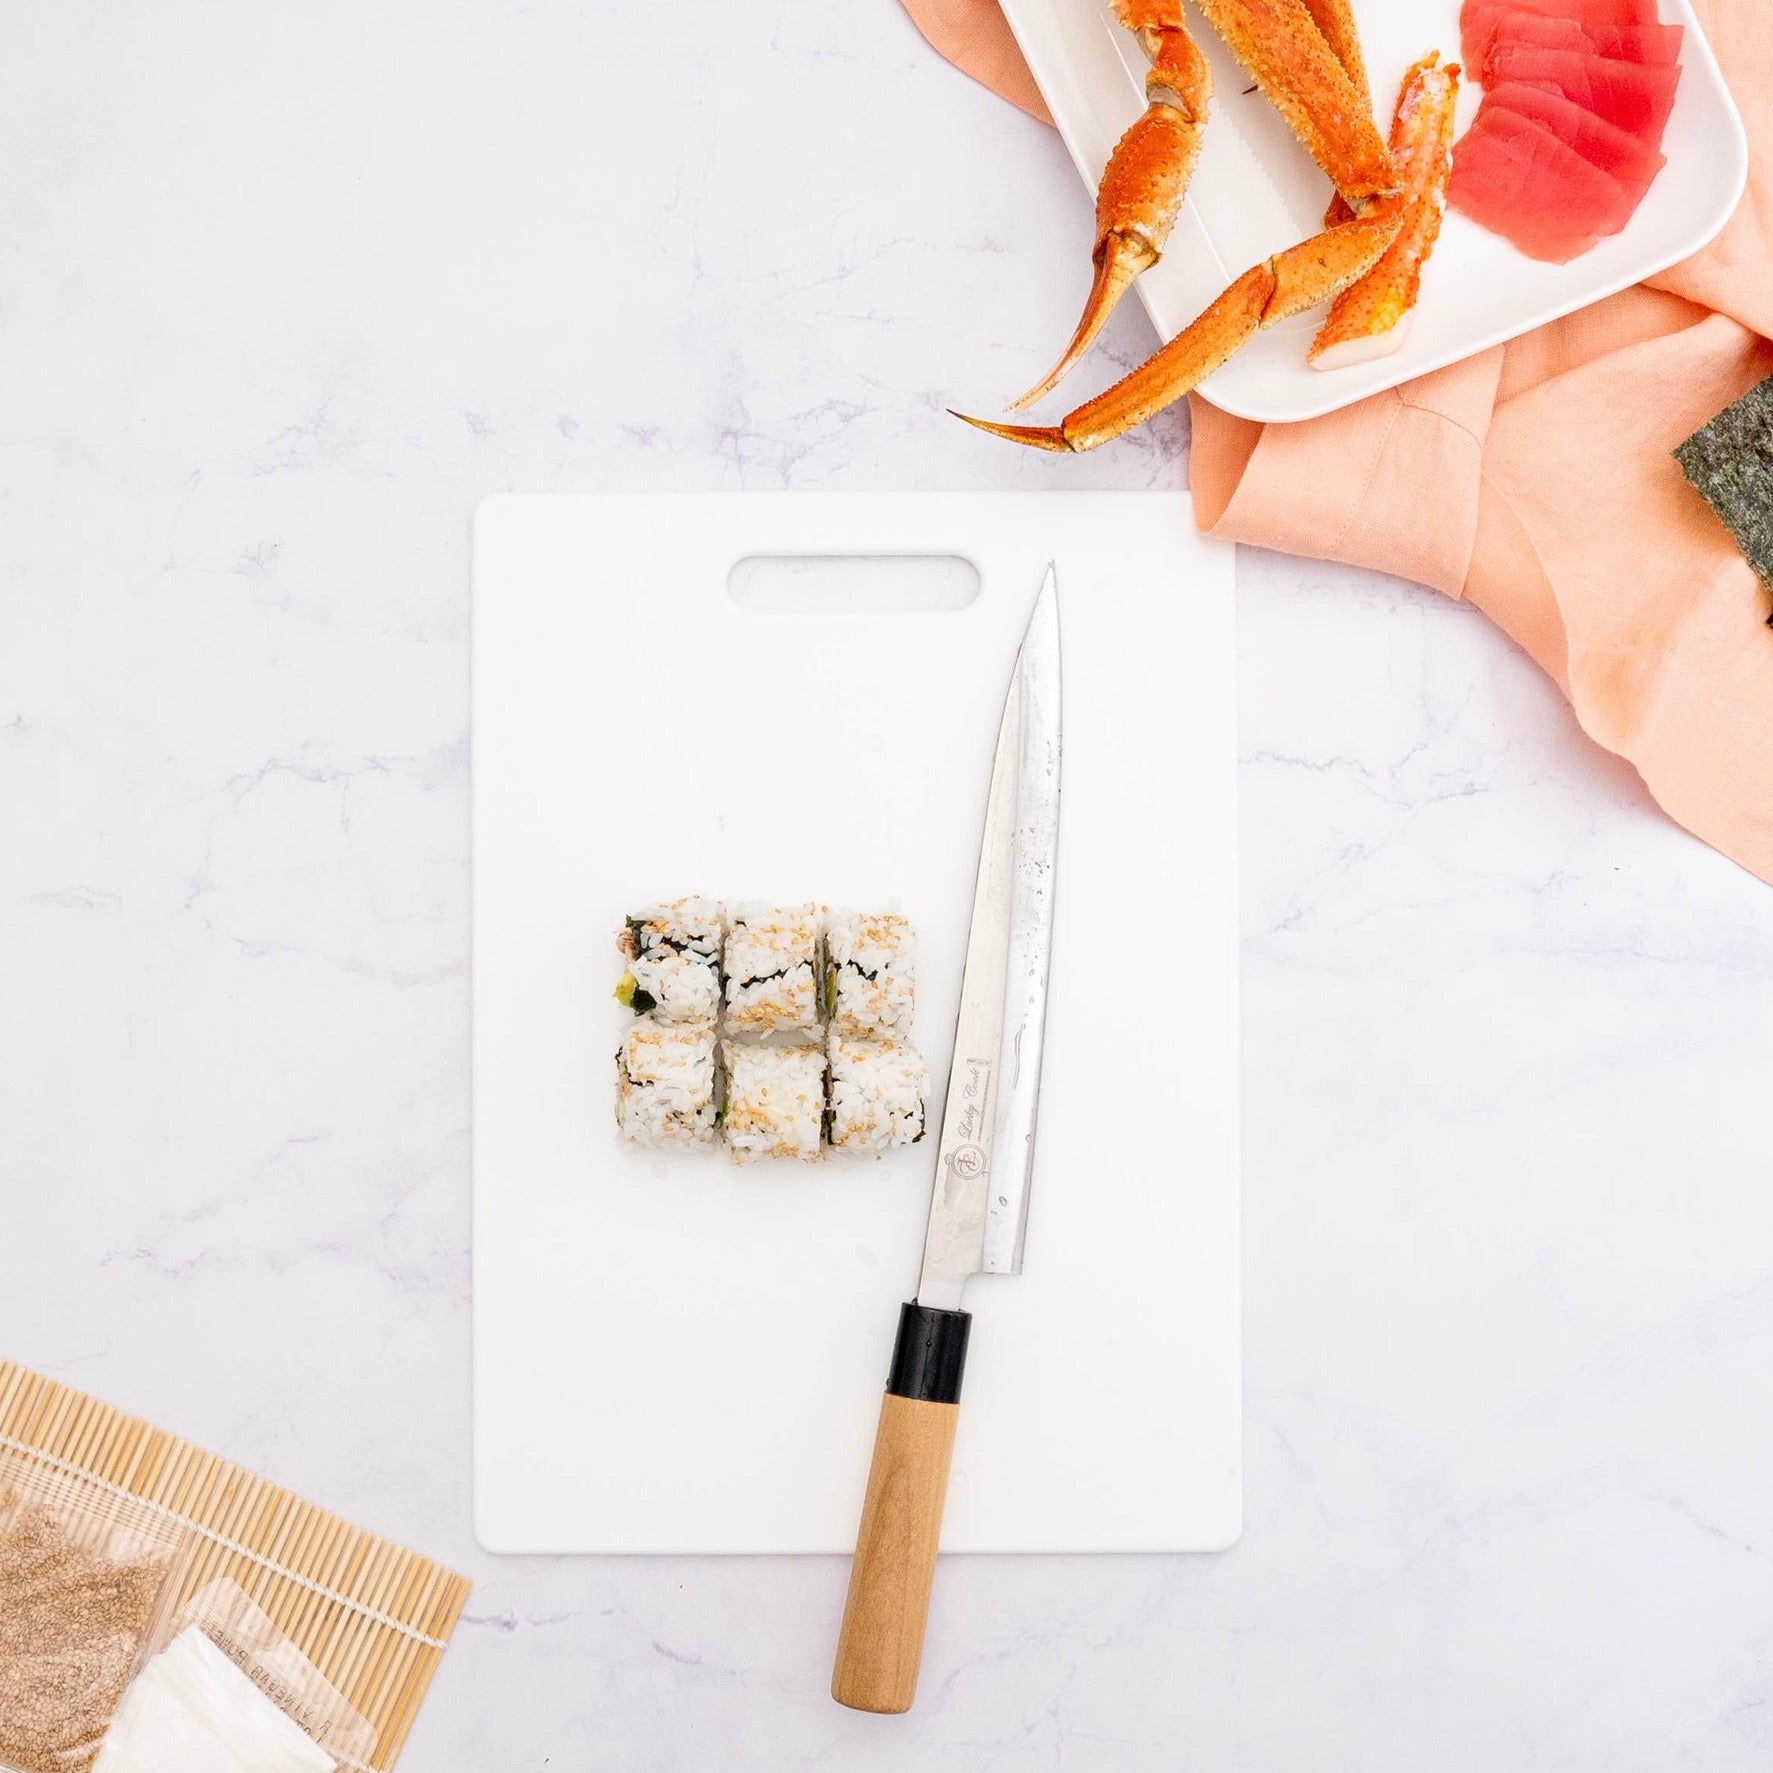  Global Grub DIY Sushi Making Kit - Sushi Kit Includes Sushi  Rice, Nori Sushi Seaweed, Rice Vinegar Powder, Sesame Seeds, Wasabi Powder,  Bamboo Sushi Rolling Mat, Instructions, Makes 48 Pieces 